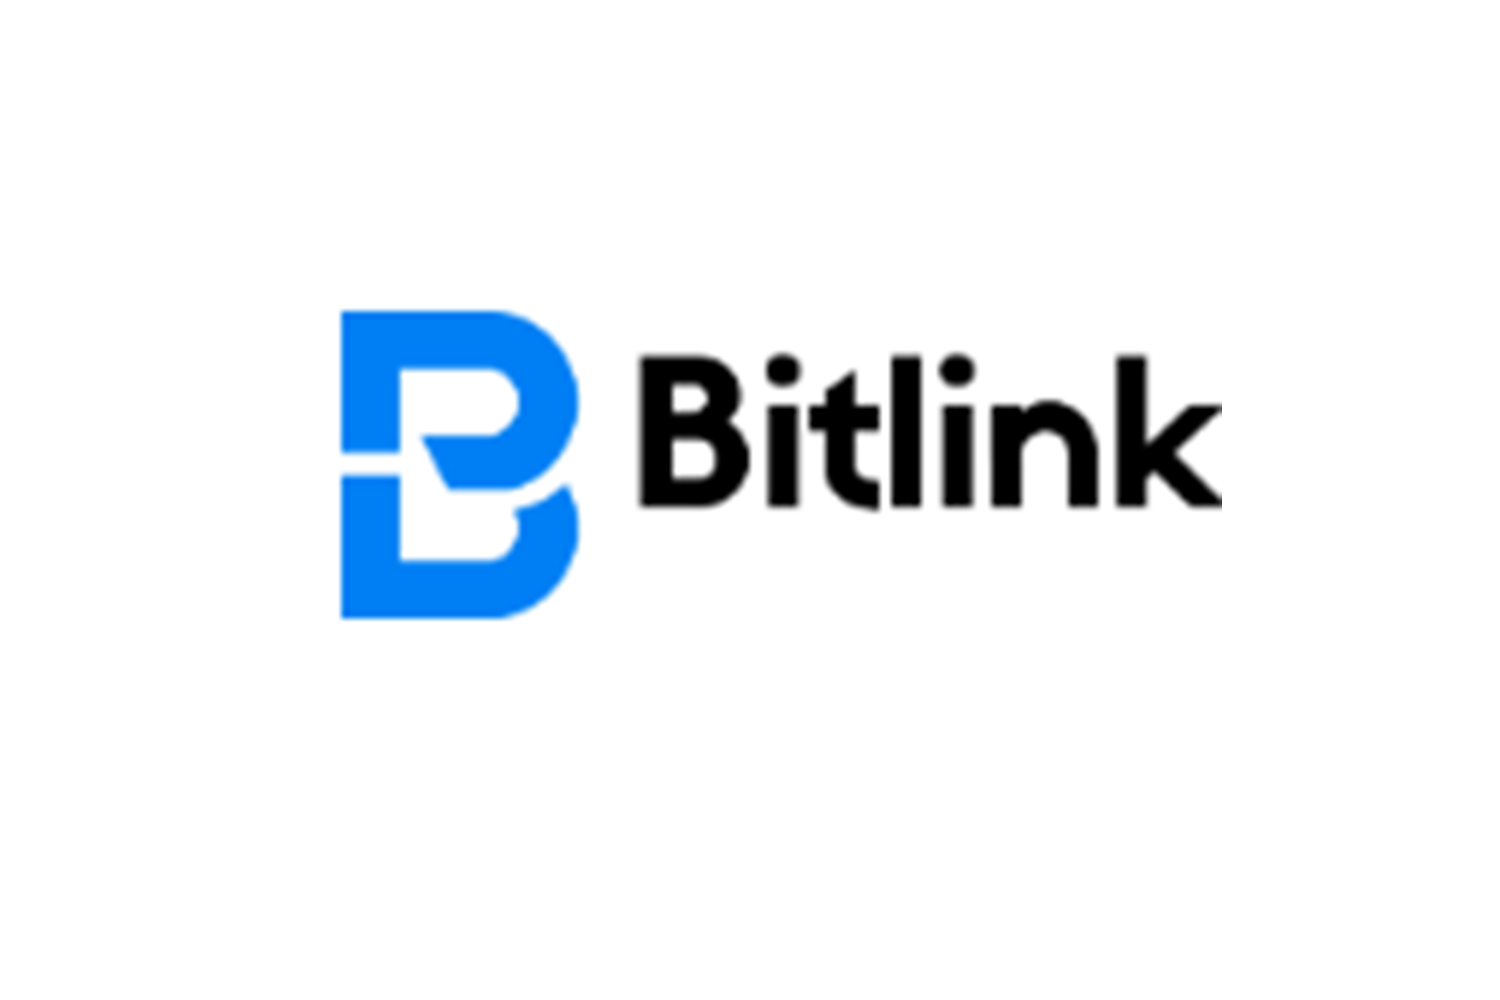 Отзывы о Bitlink и описание торговых условий — Обман?